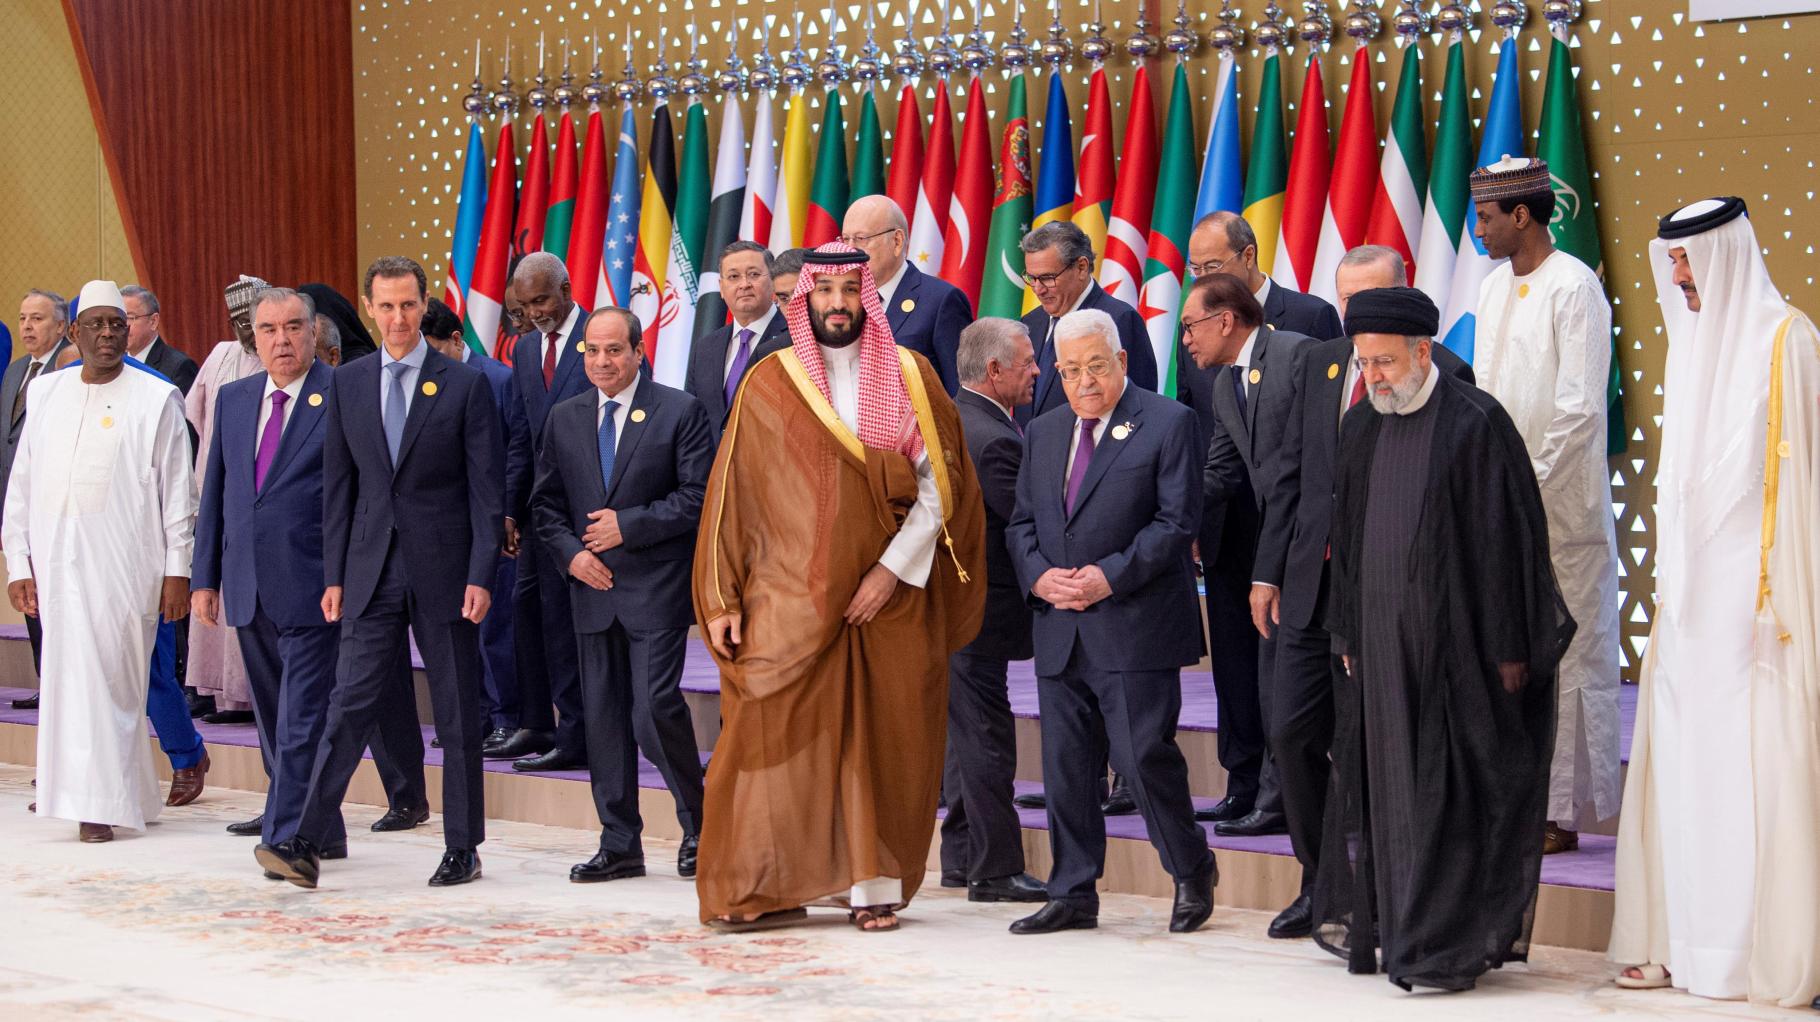 Israel-Krieg: Arabischer Sondergipfel fordert internationale Friedenskonferenz